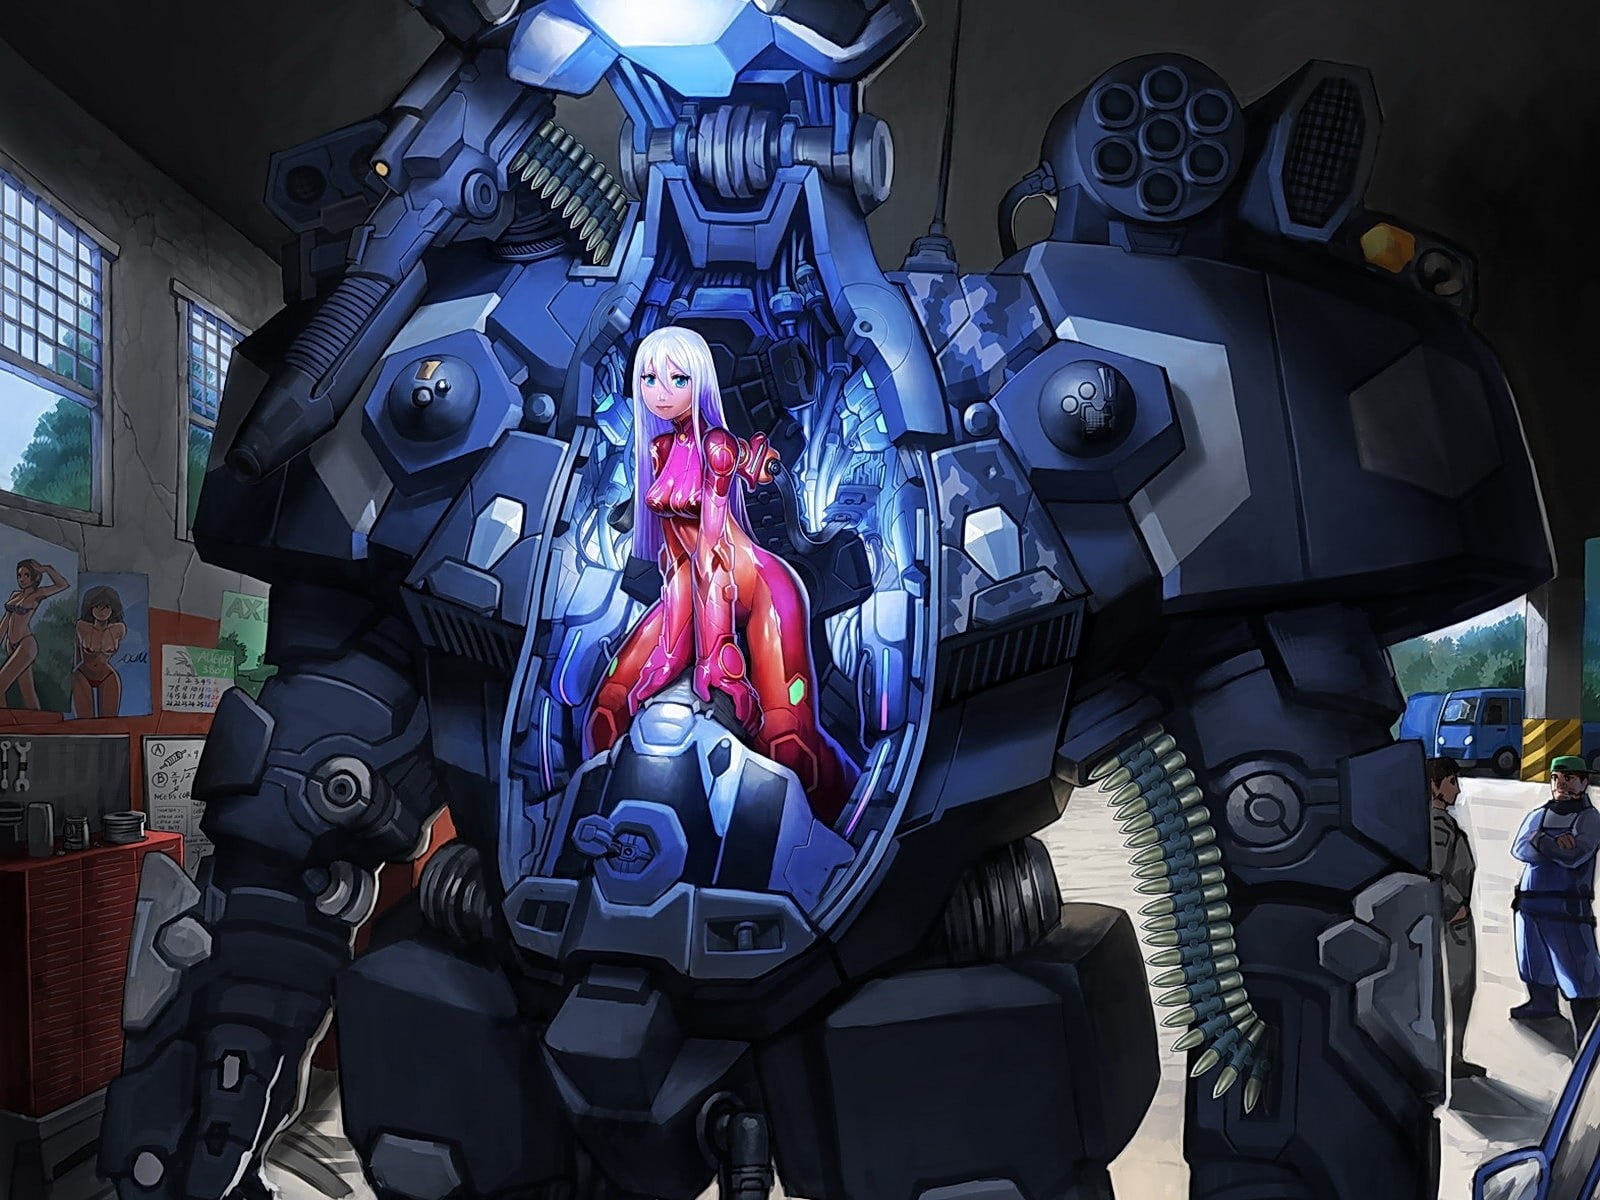 female character riding on robot anime digital wallpaper, anime girls